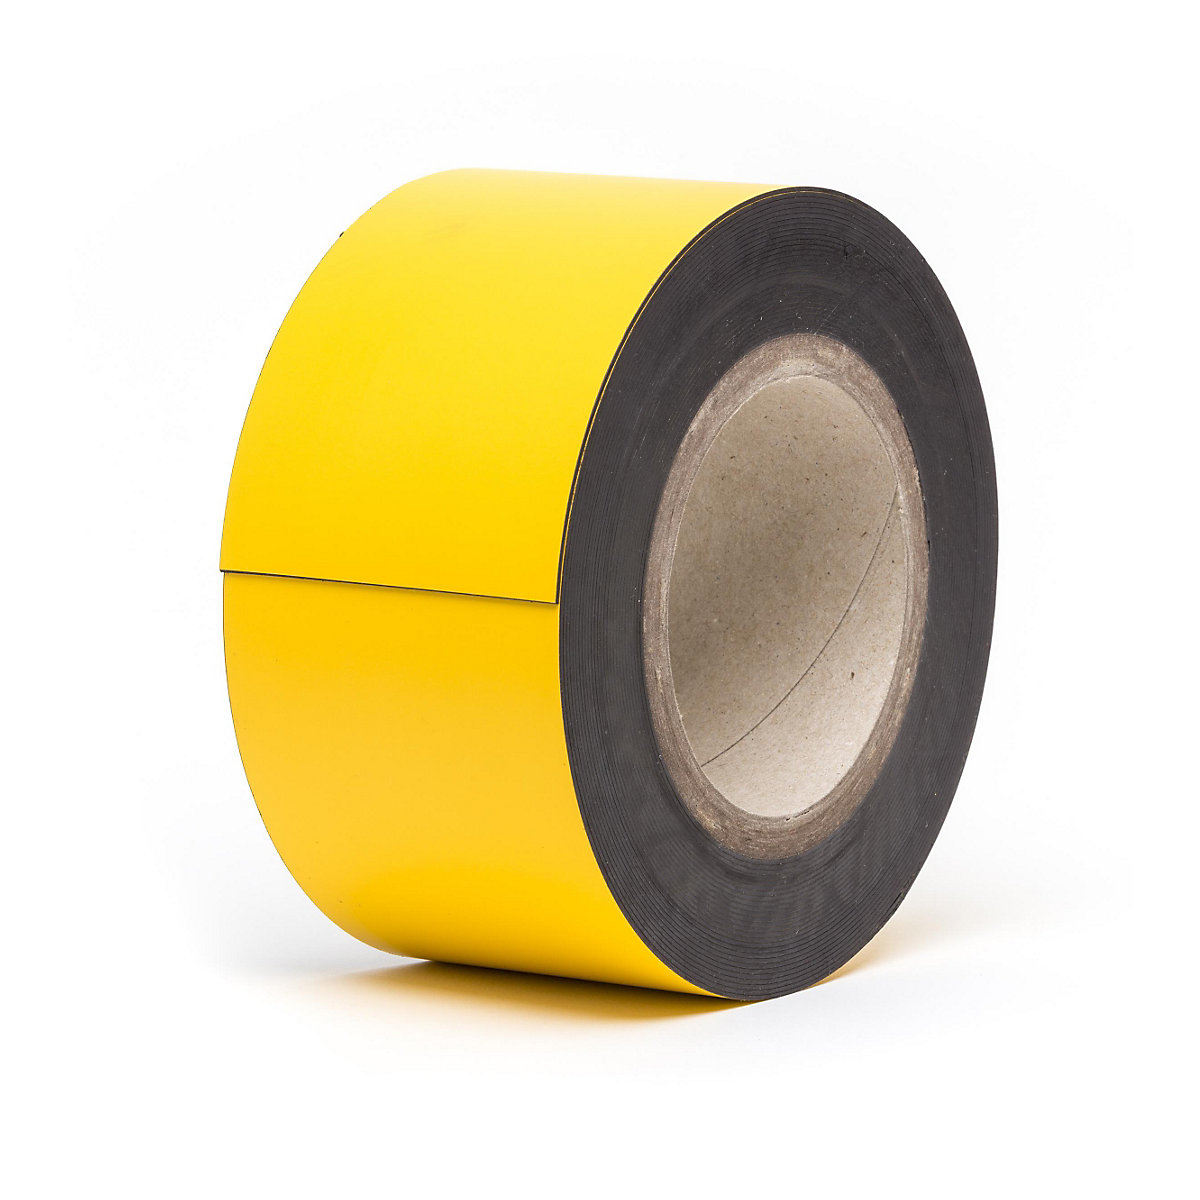 Magnetne skladišne pločice, u roli, u žutoj boji, visina 70 mm, dužina role 10 m-8